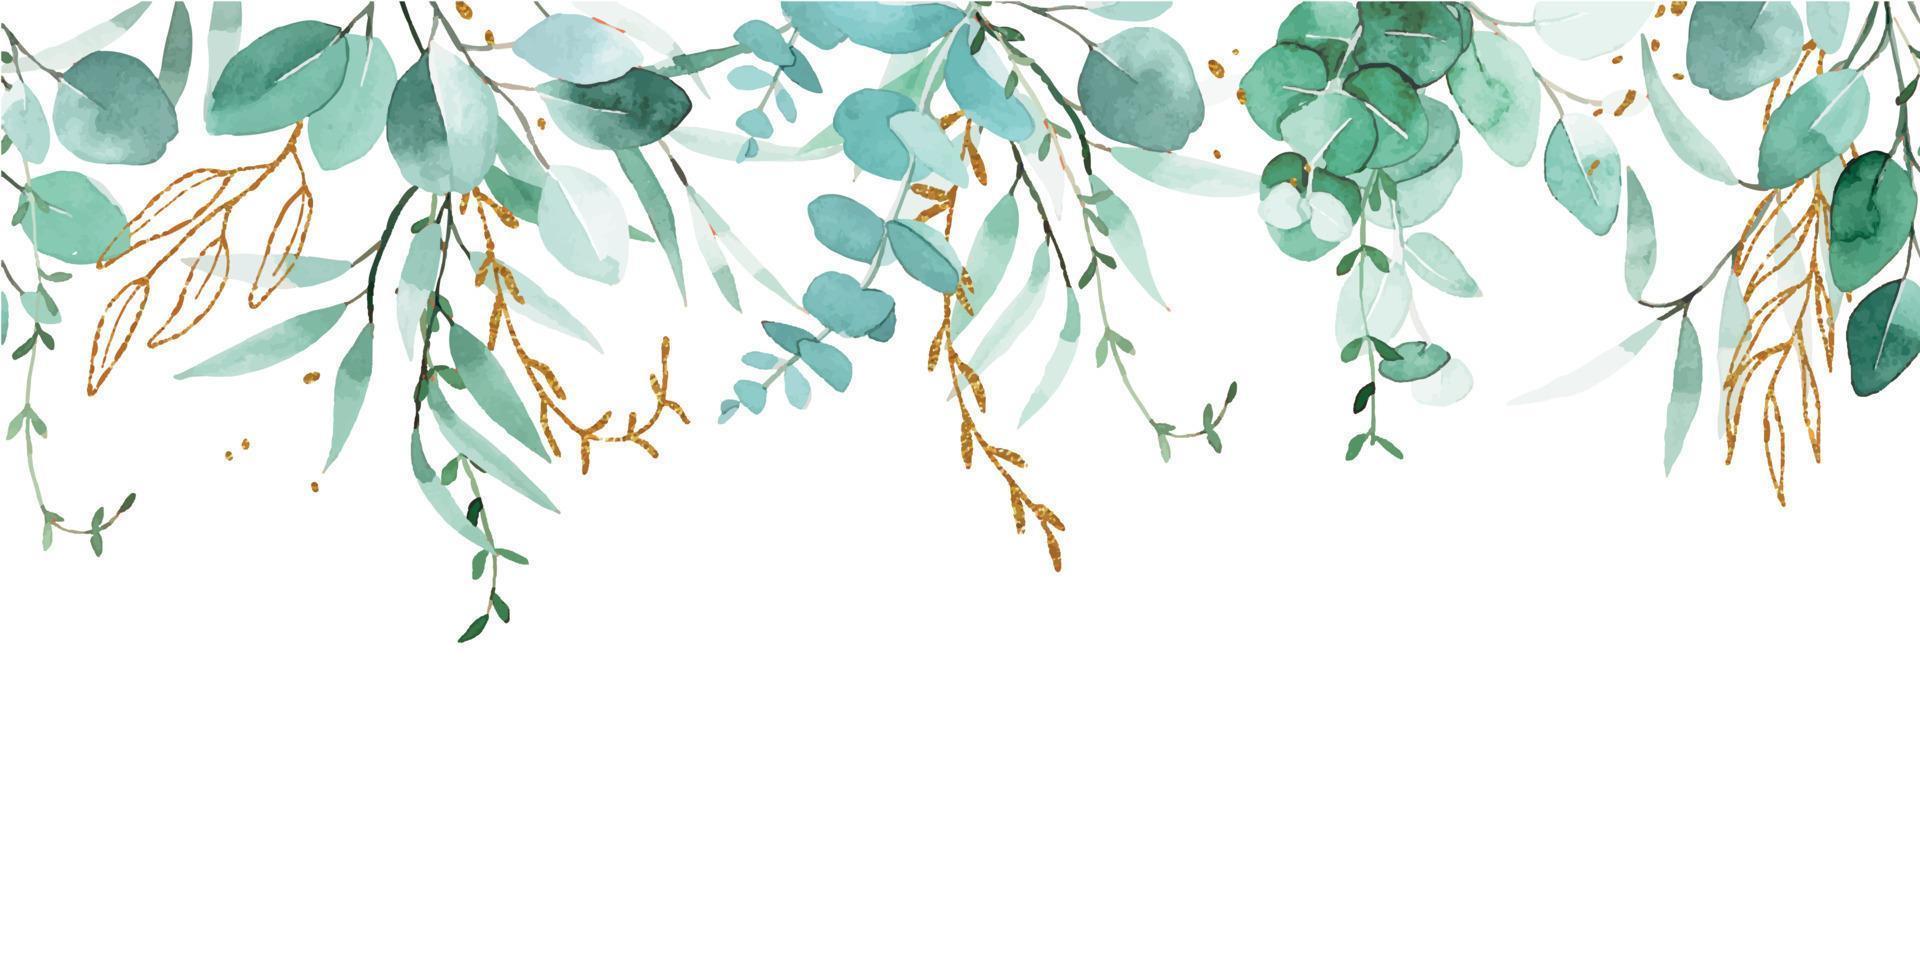 dessin à l'aquarelle. bordure transparente, bannière, cadre de feuilles d'eucalyptus et d'éléments dorés. feuilles vertes et dorées de style vintage. vecteur